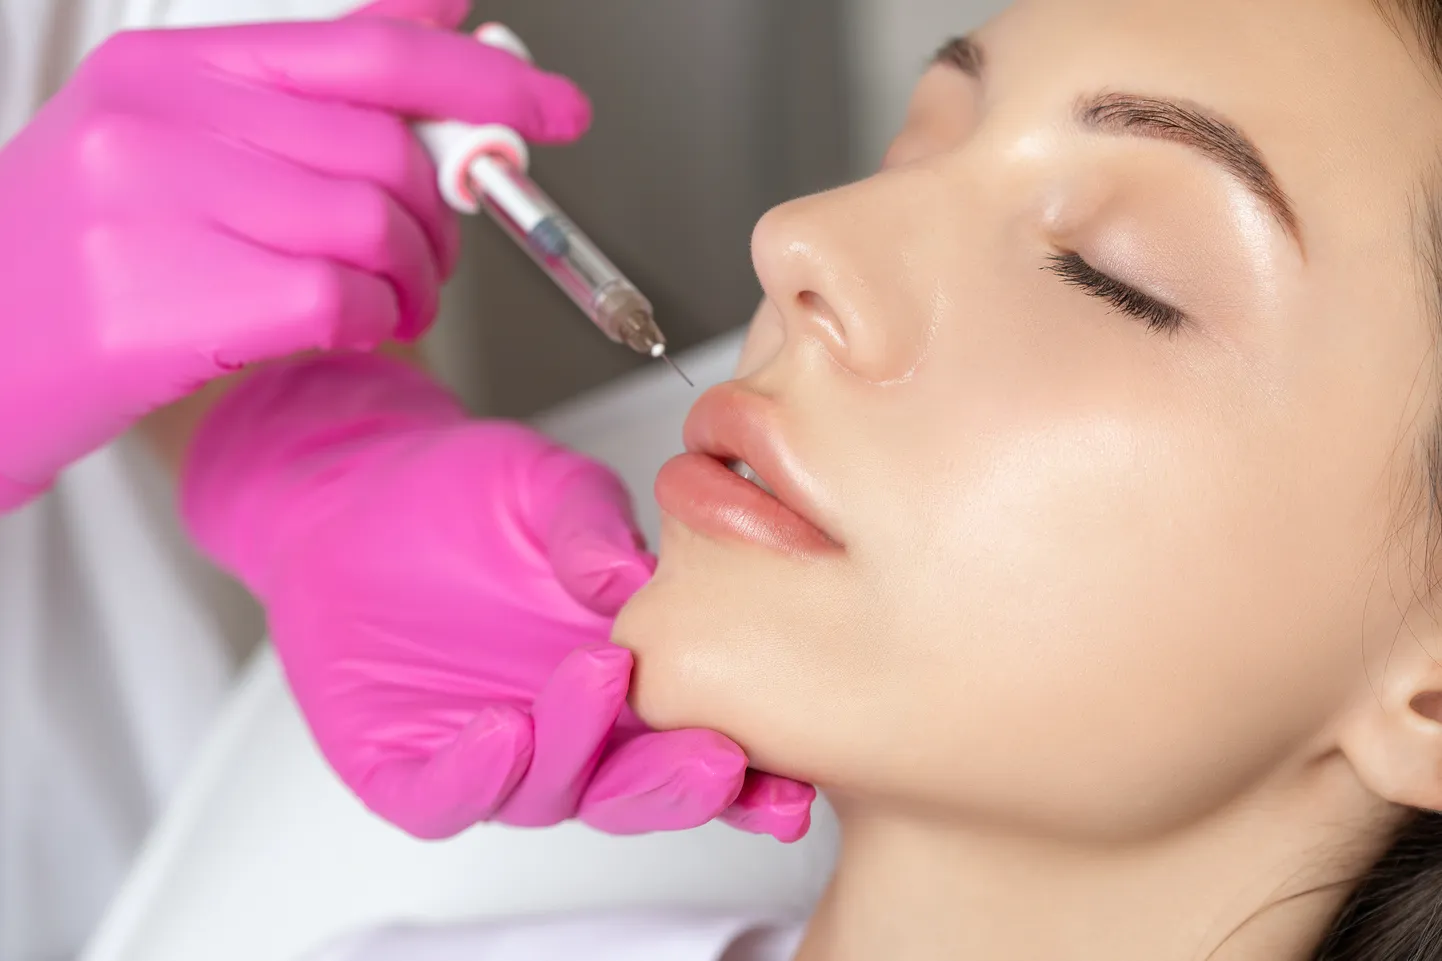 Инъекции в губы - обычная косметологическая процедура. Иллюстративное фото